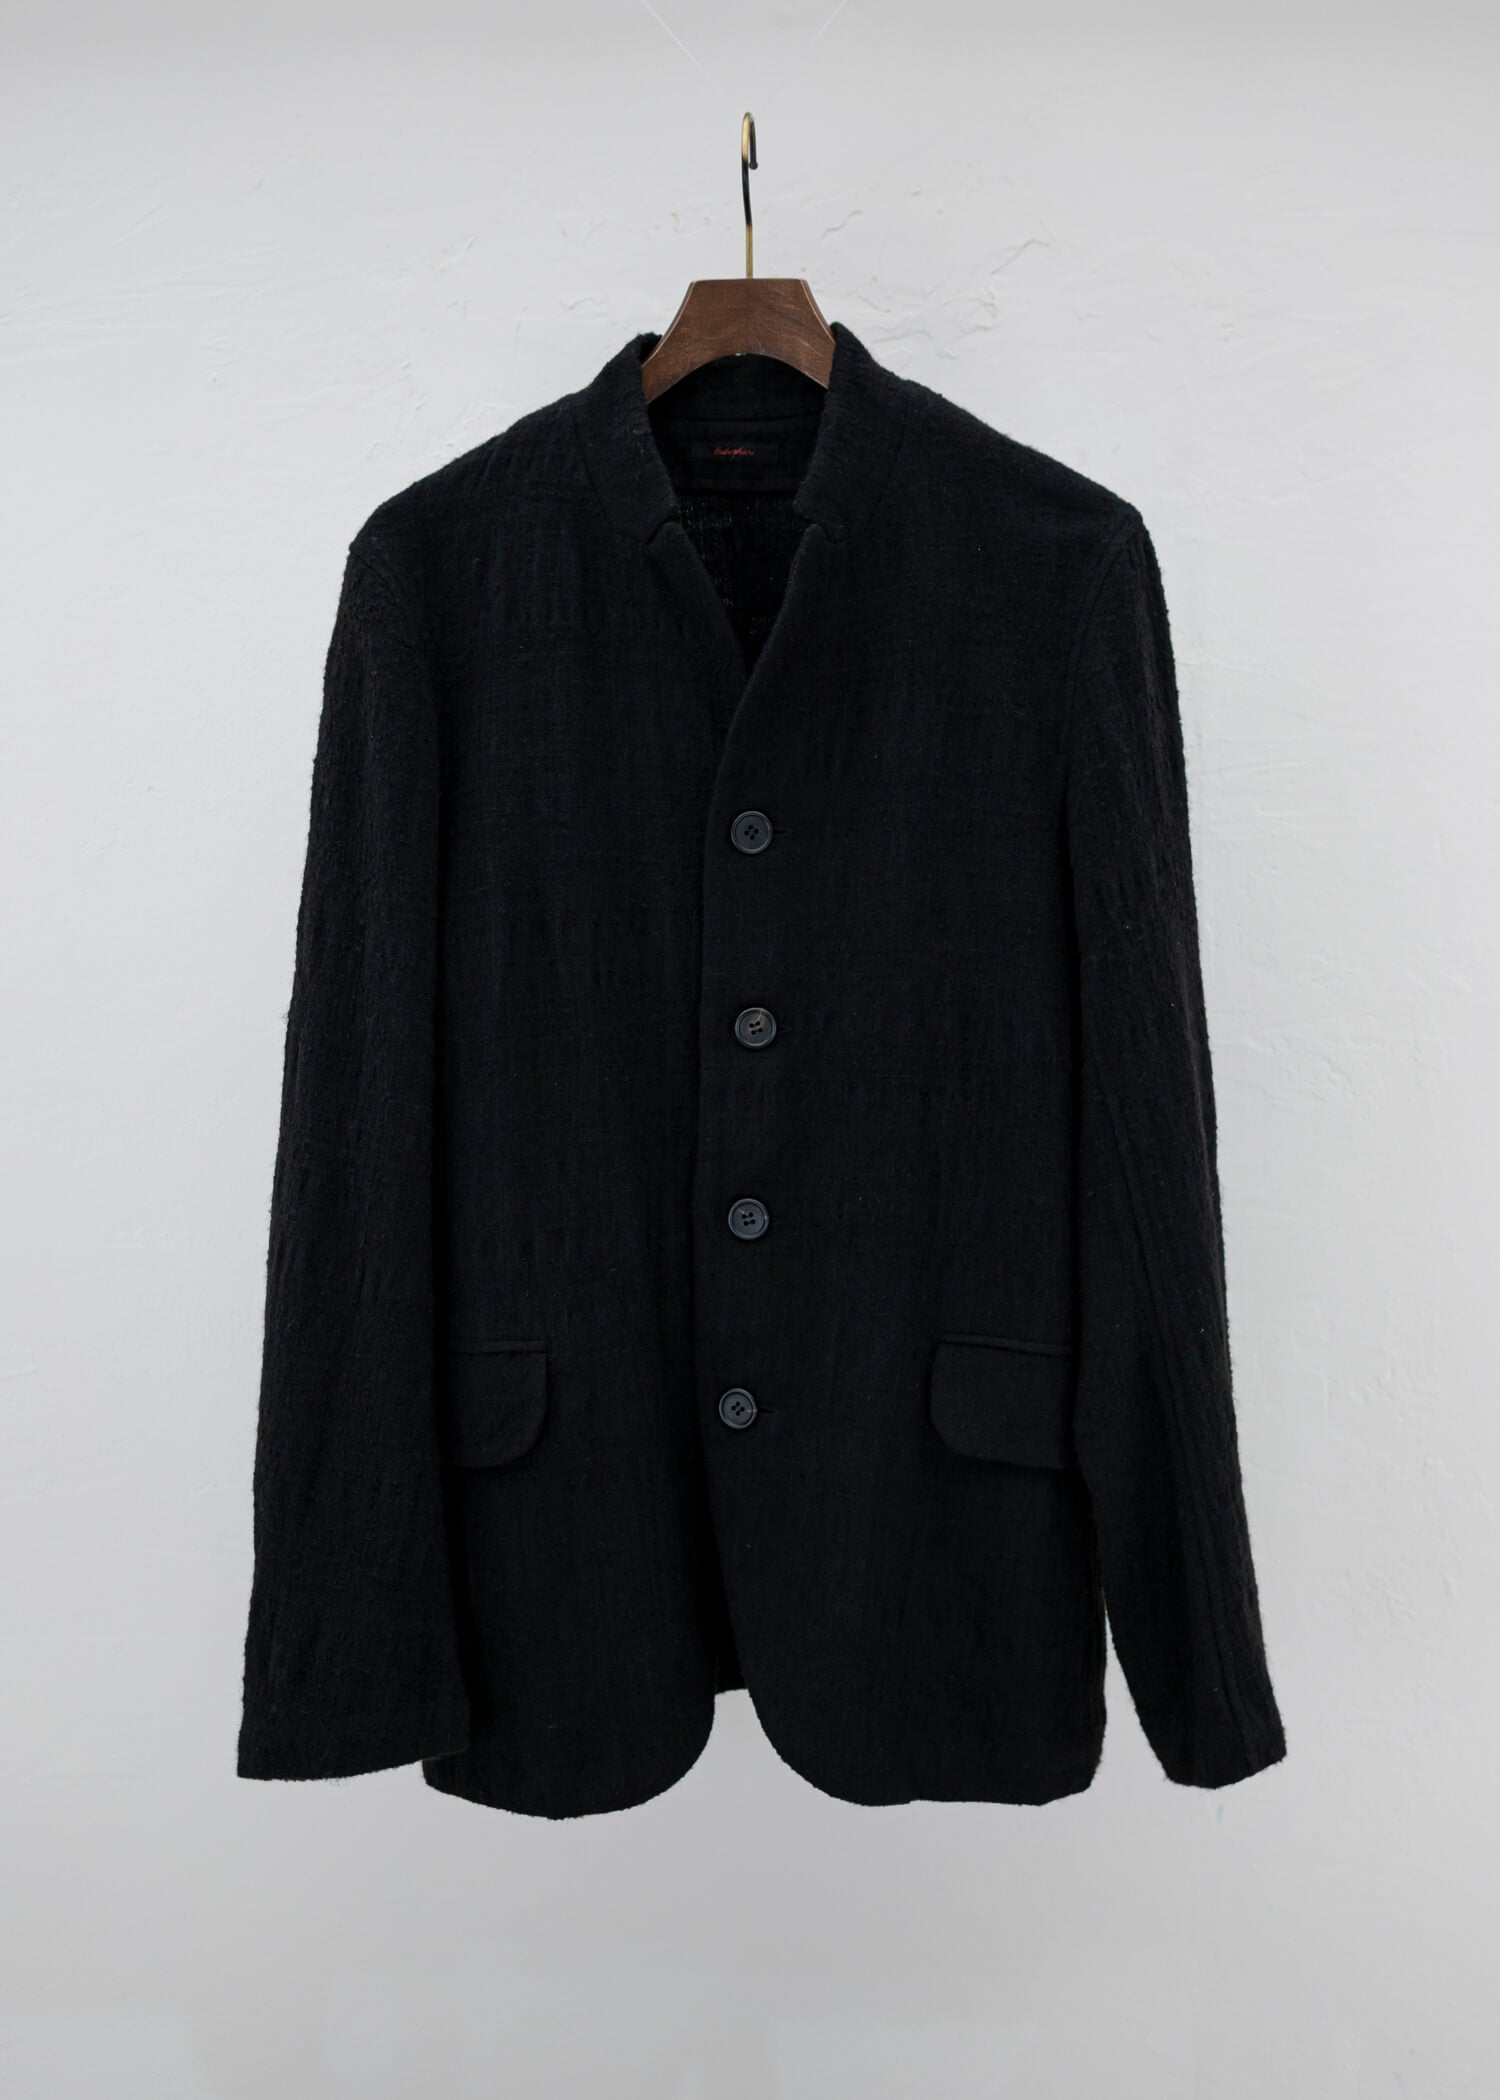 Jurgen Lehl Matocas silk wool stand collar jacket